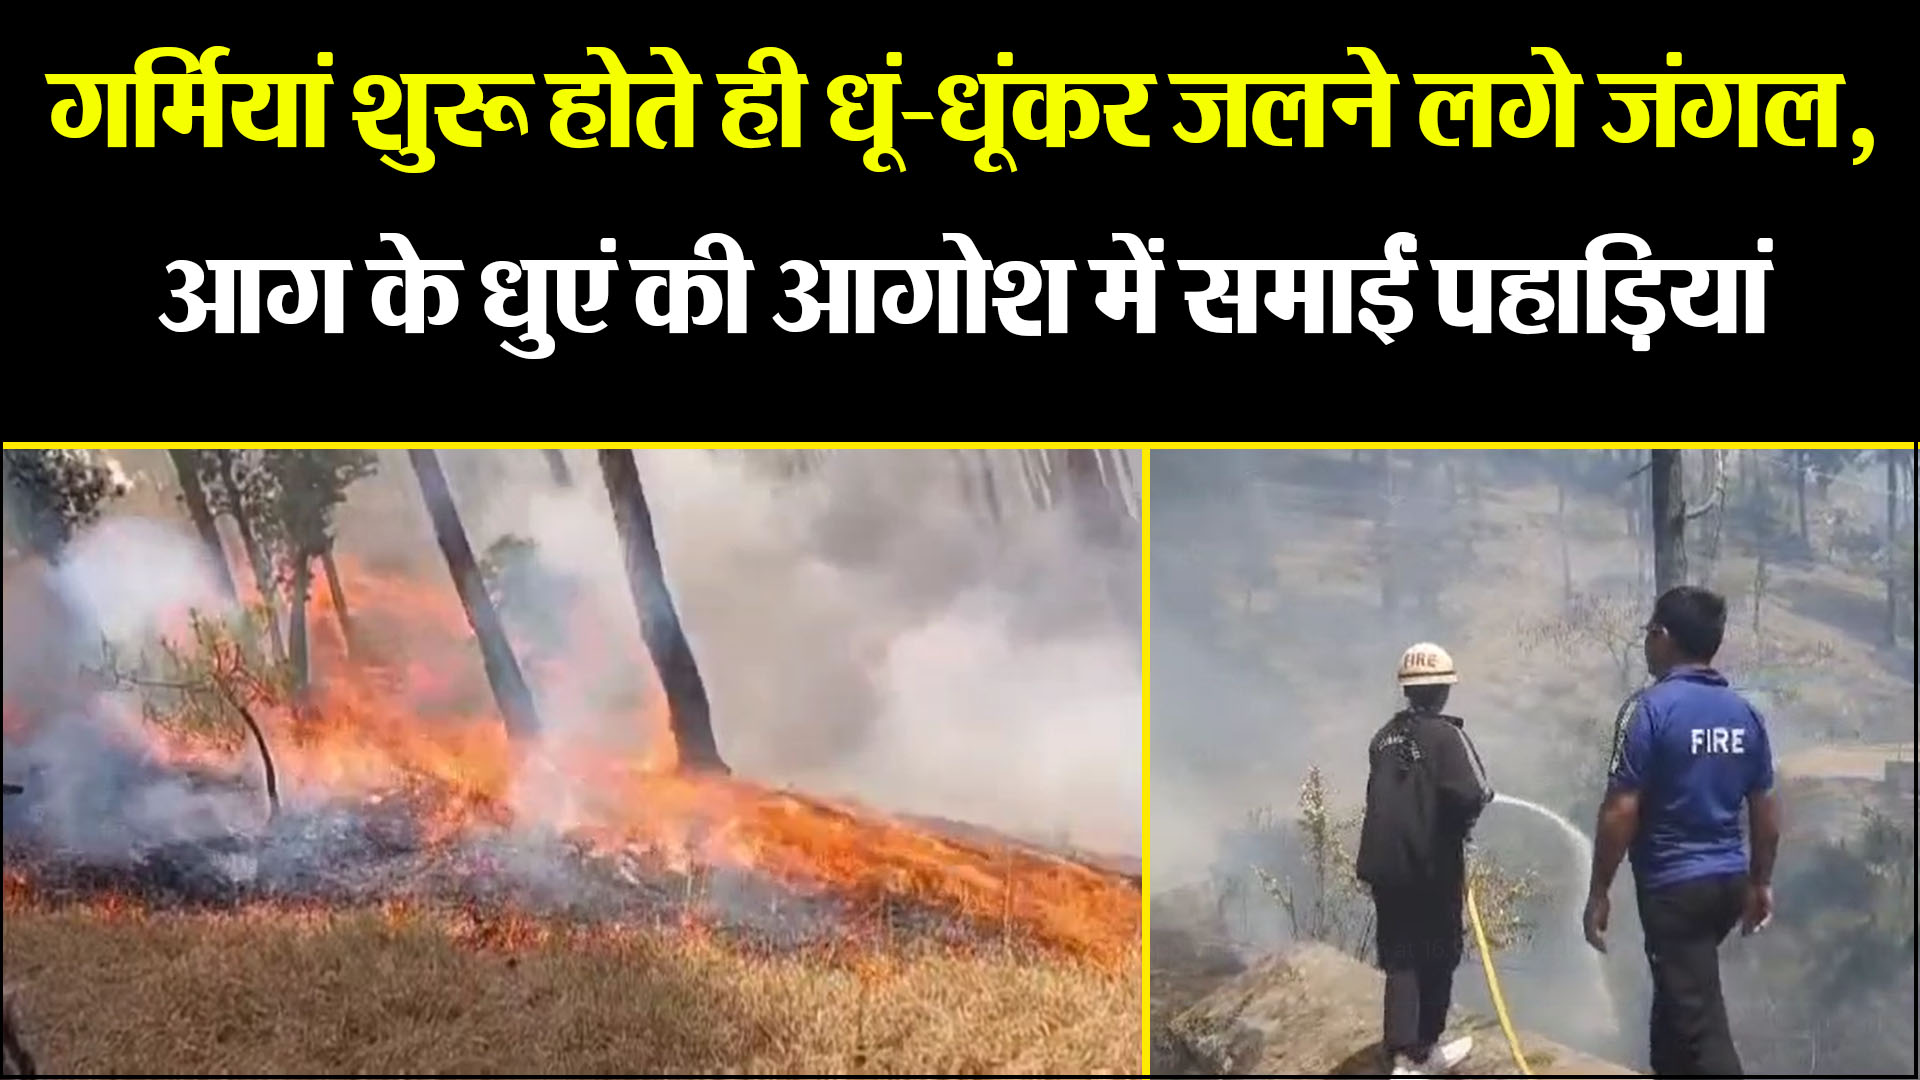 अल्मोड़ा: गर्मियां शुरू होते ही धूं-धूंकर जलने लगे जंगल, आग के धुएं की आगोश में समाईं पहाड़ियां